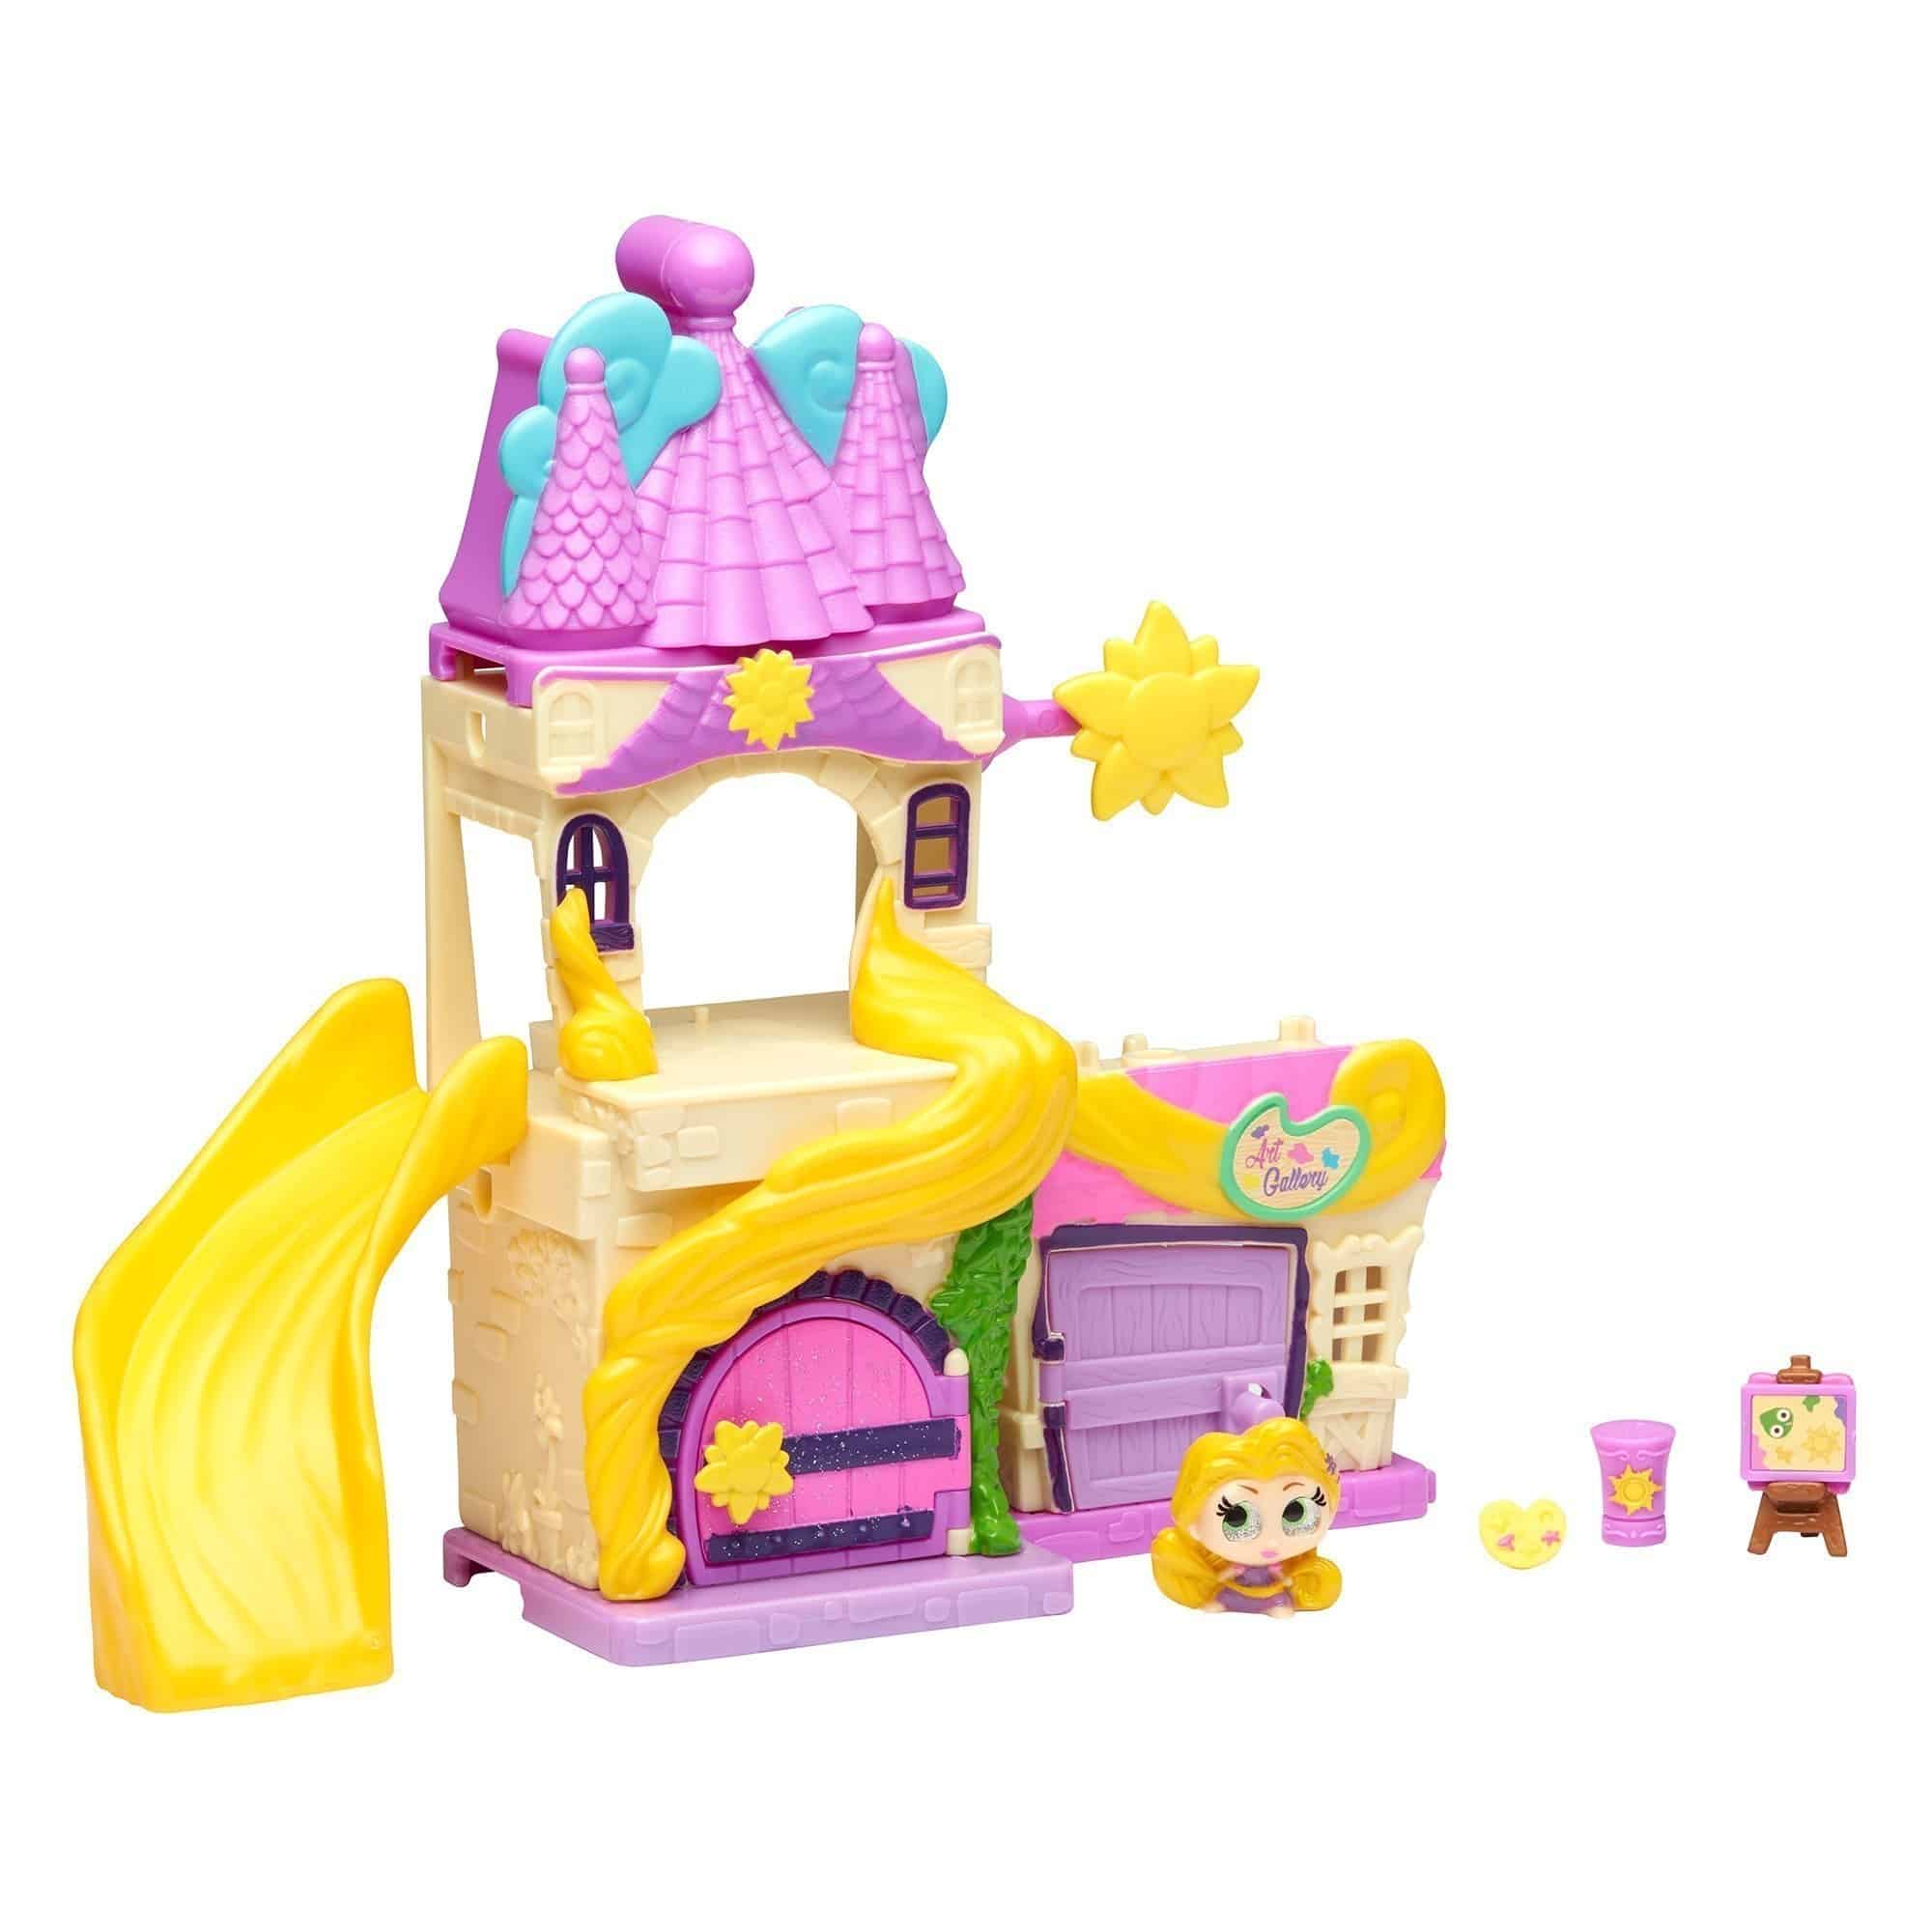 Disney Doorables - Rapunzel's Tower Playset